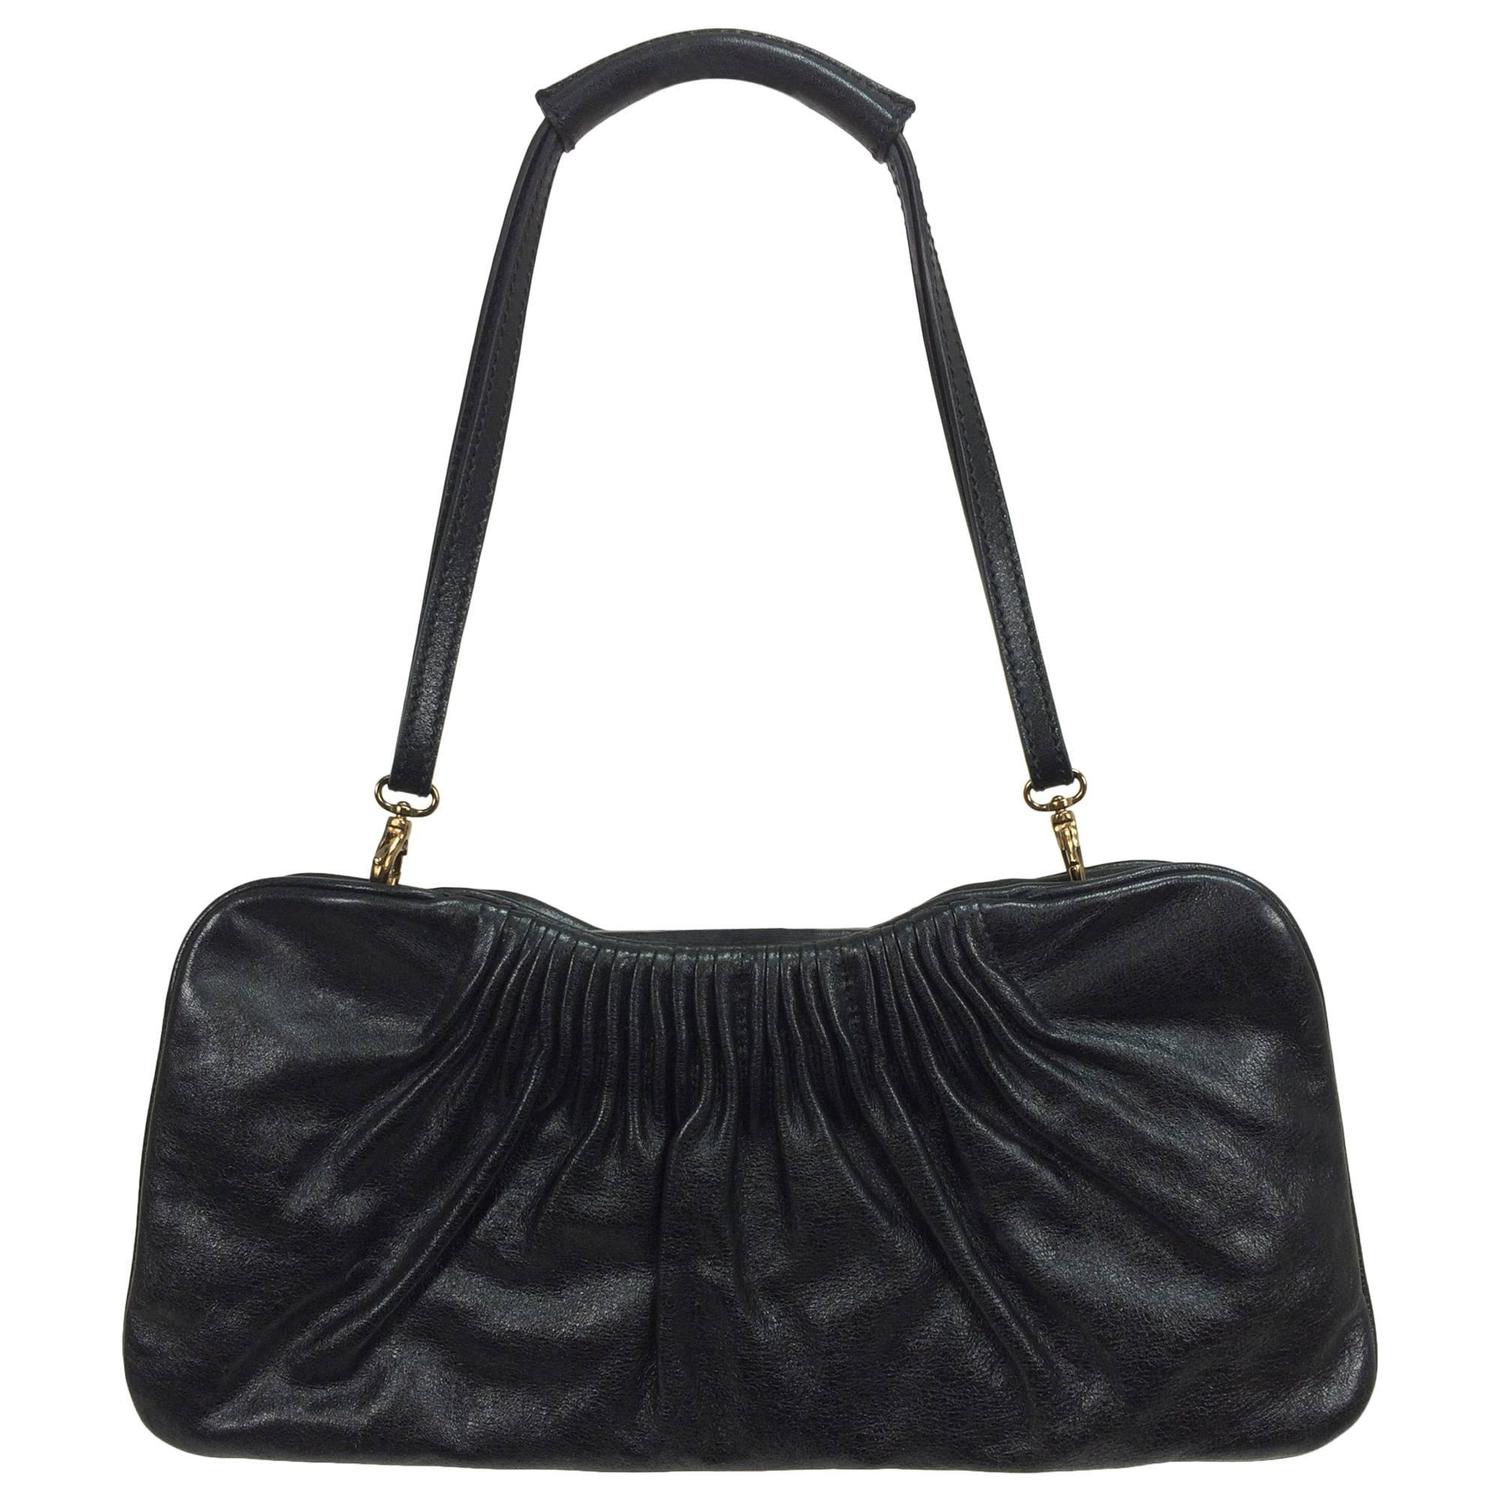 Escada black leather frame bag convertible clutch or shoulder handbag For Sale at 1stdibs